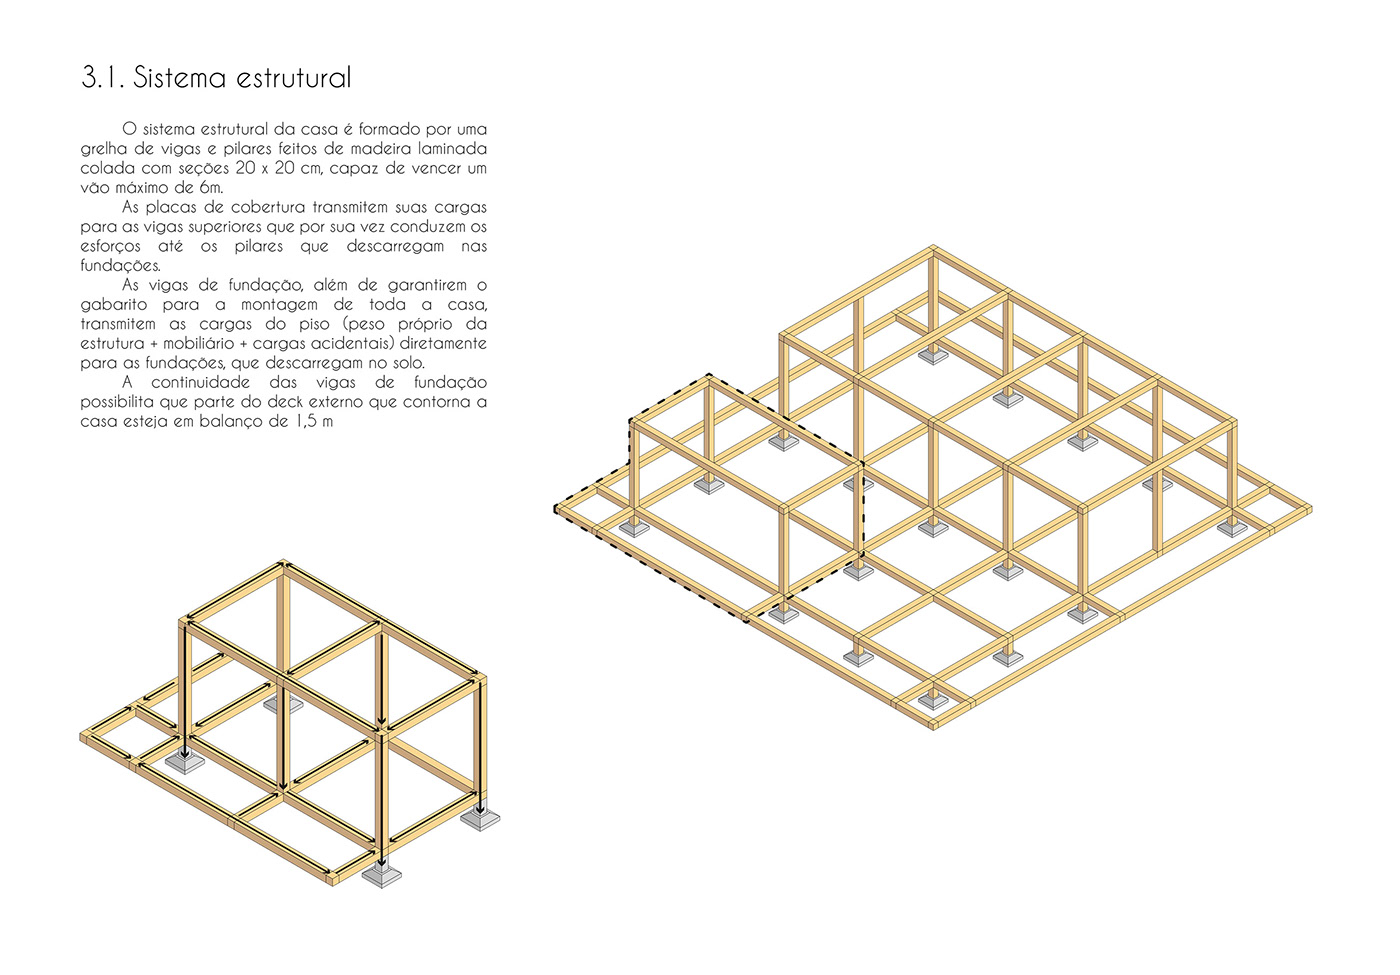 ARQUITETURA arquitetura sustentável casa construção seca house modular projeto residência unifamiliar Sustainable